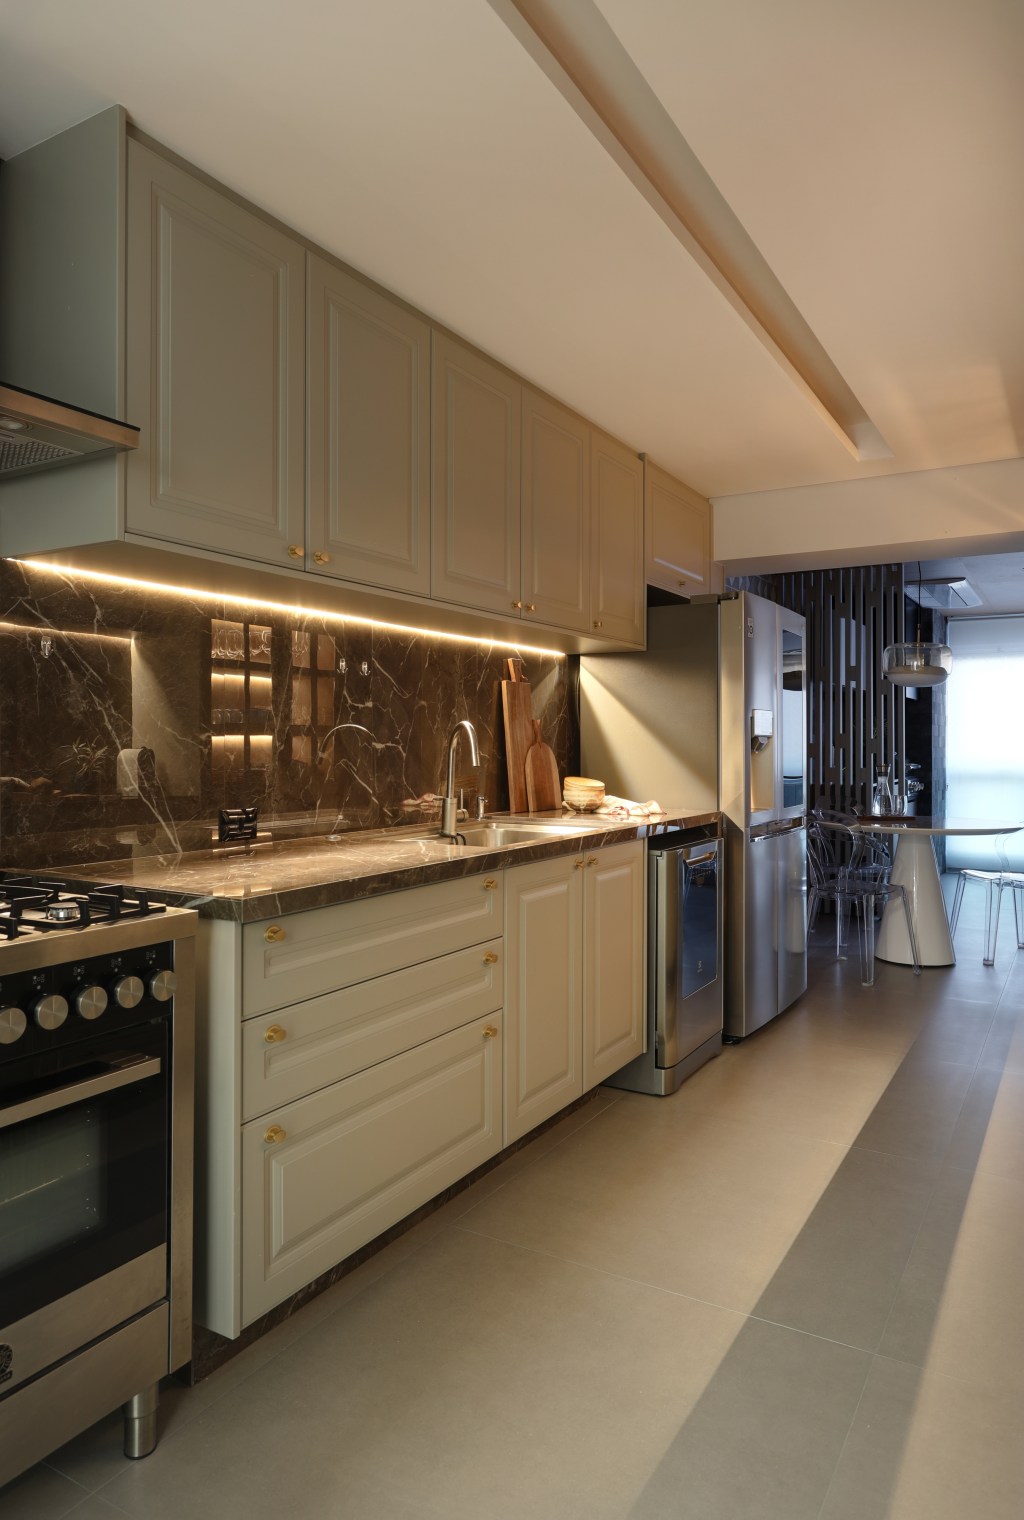 Apê moderno de 209 m² ganha toque francês com boiseries e molduras . Projeto de Barbara Dundes. Na foto, cozinha com iluminação indireta e varanda integrada.